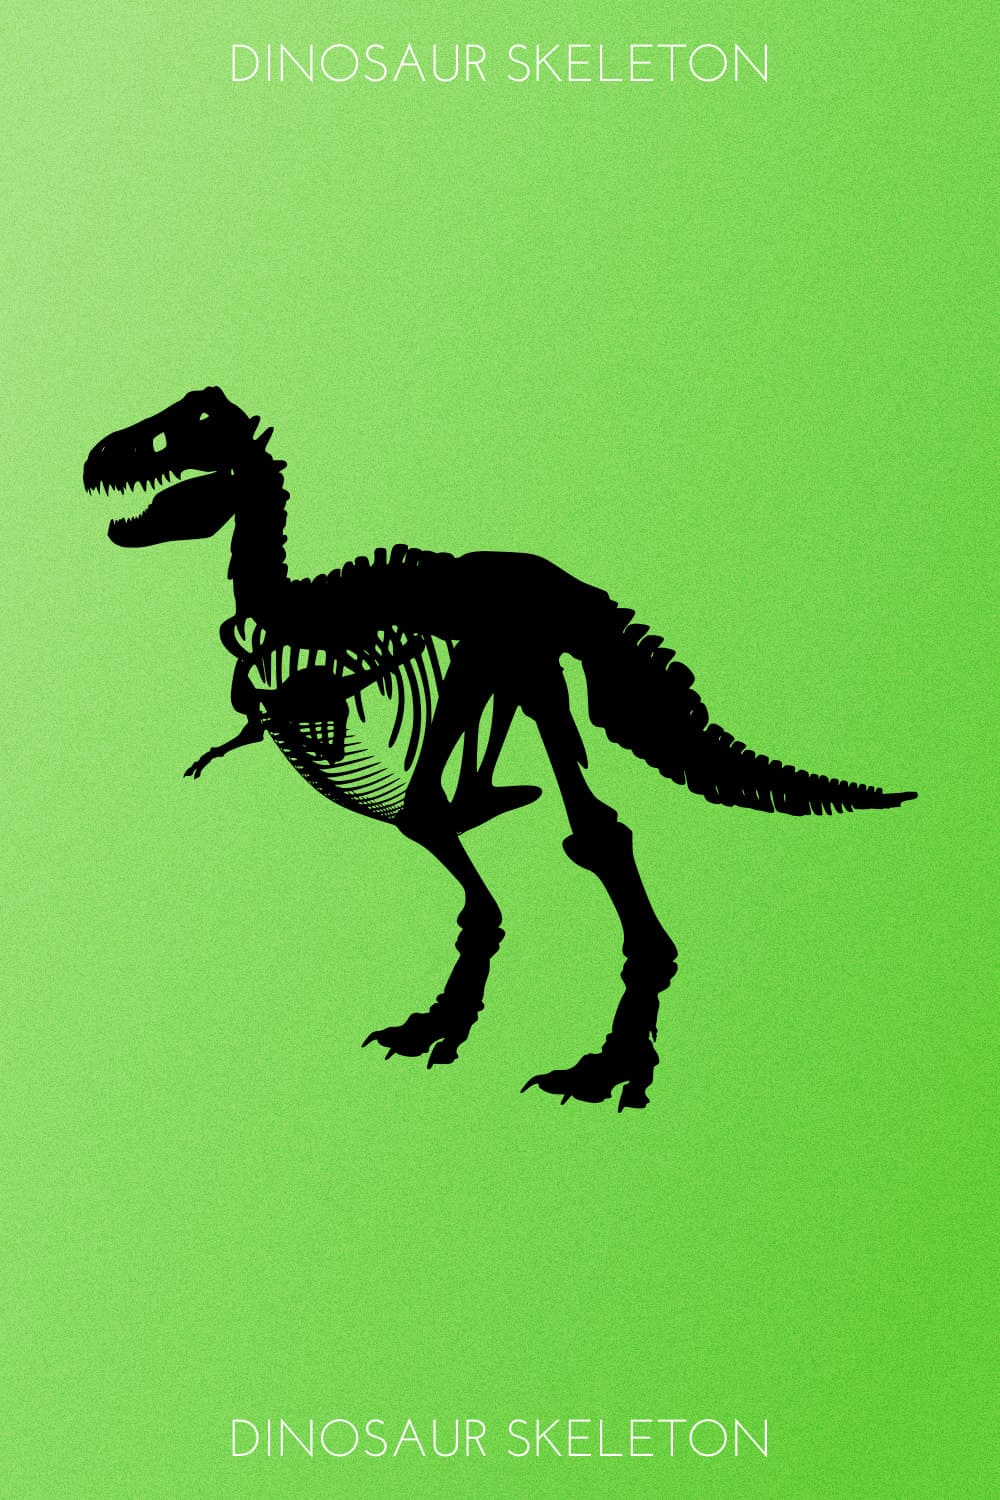 Dinosaur Skeleton - Pinterest Image.